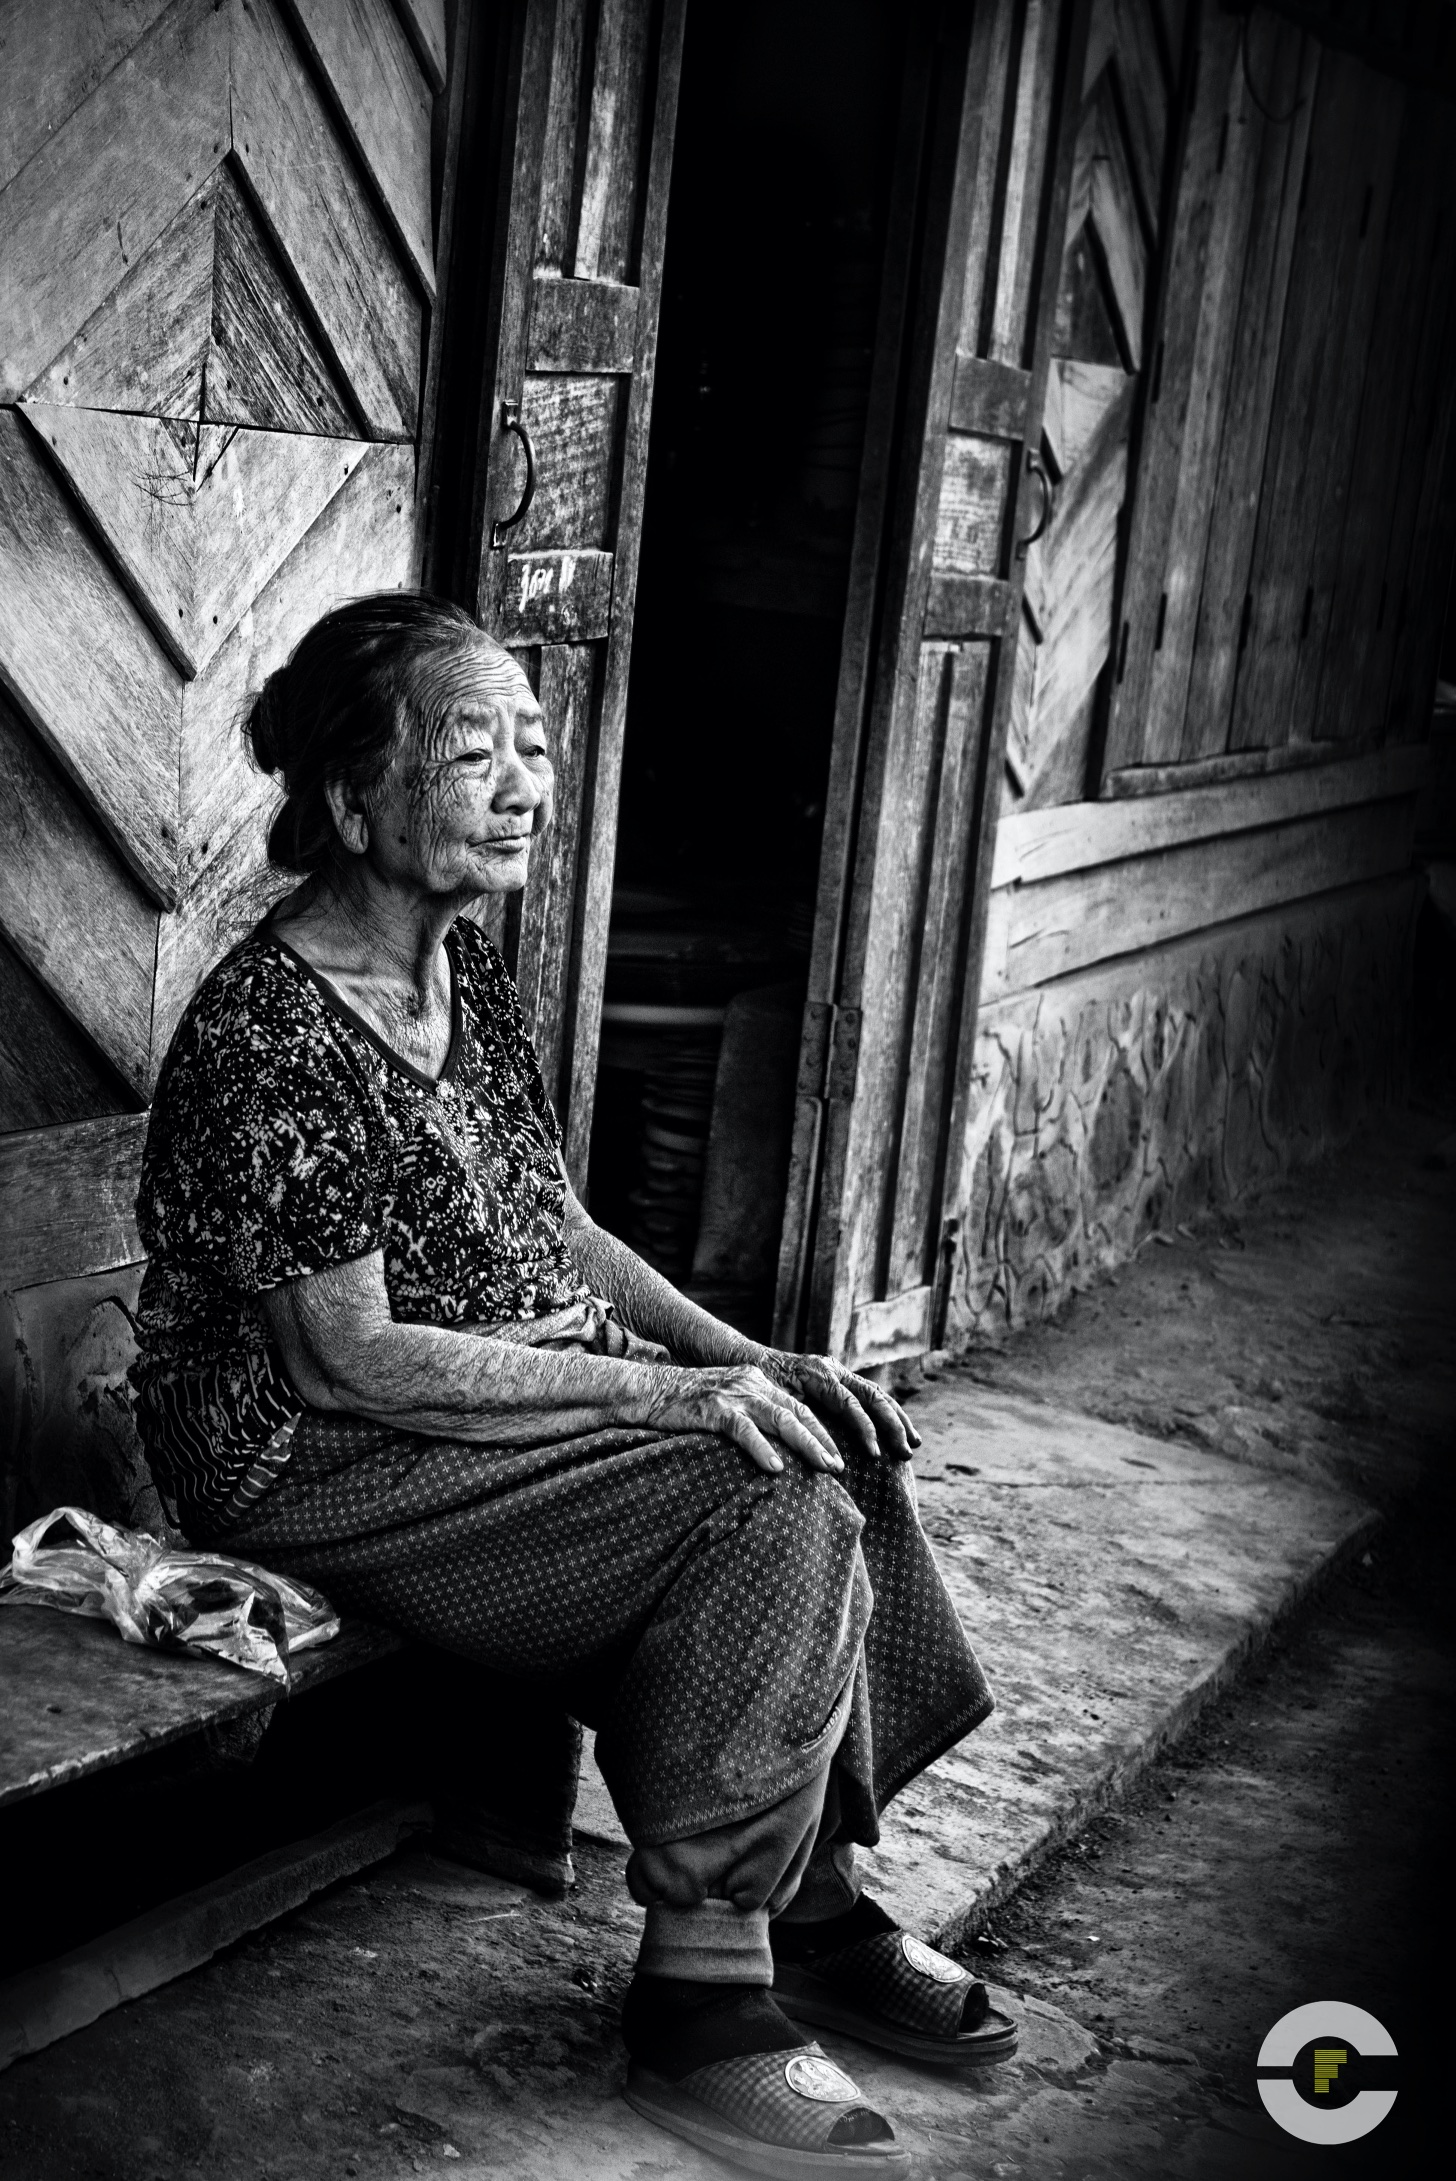 Laos / Vientiane / 2014